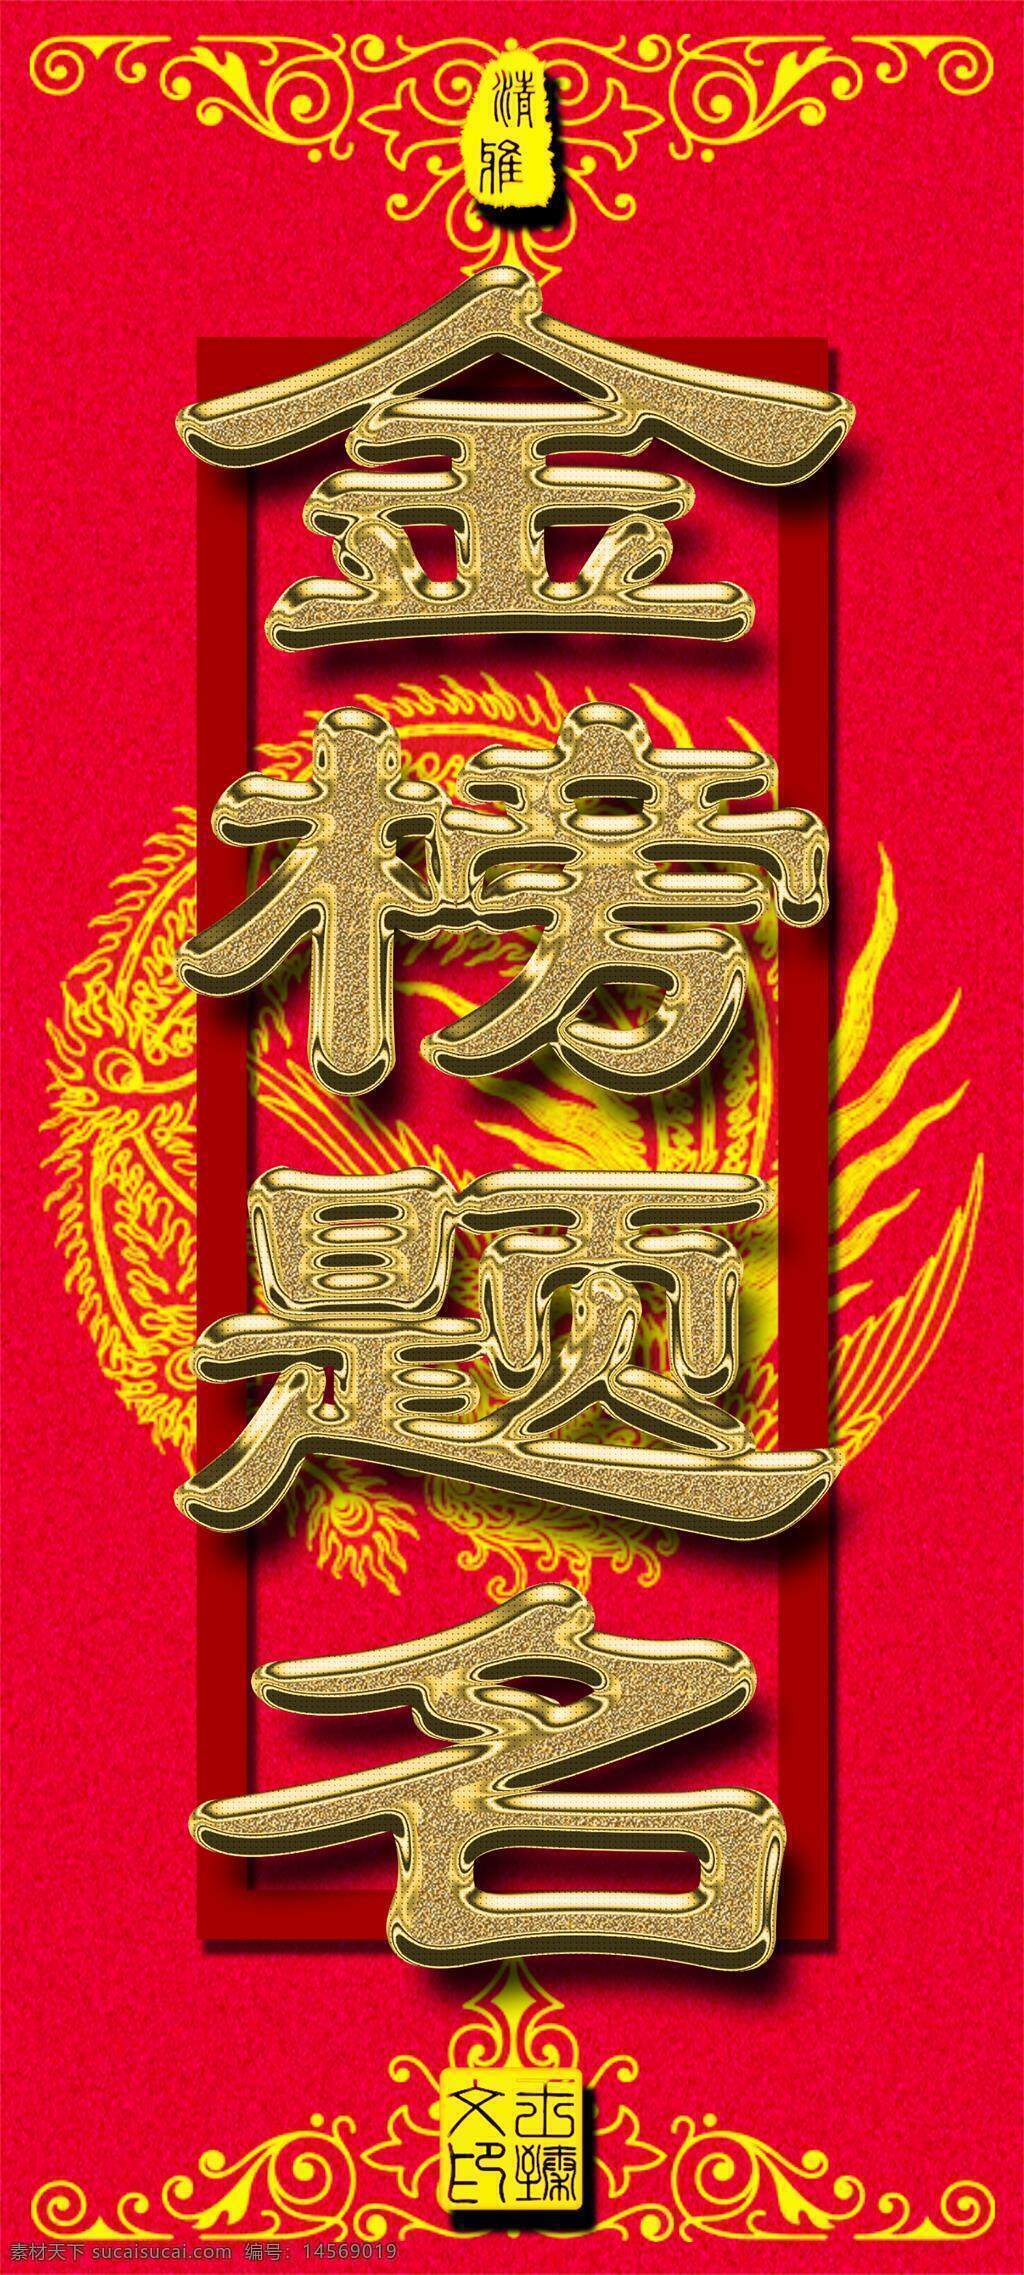 金榜题名 高考加油 金属质感 高考 加油 金榜 题名 红色 祝福 传统 中国红 励志 红色经典